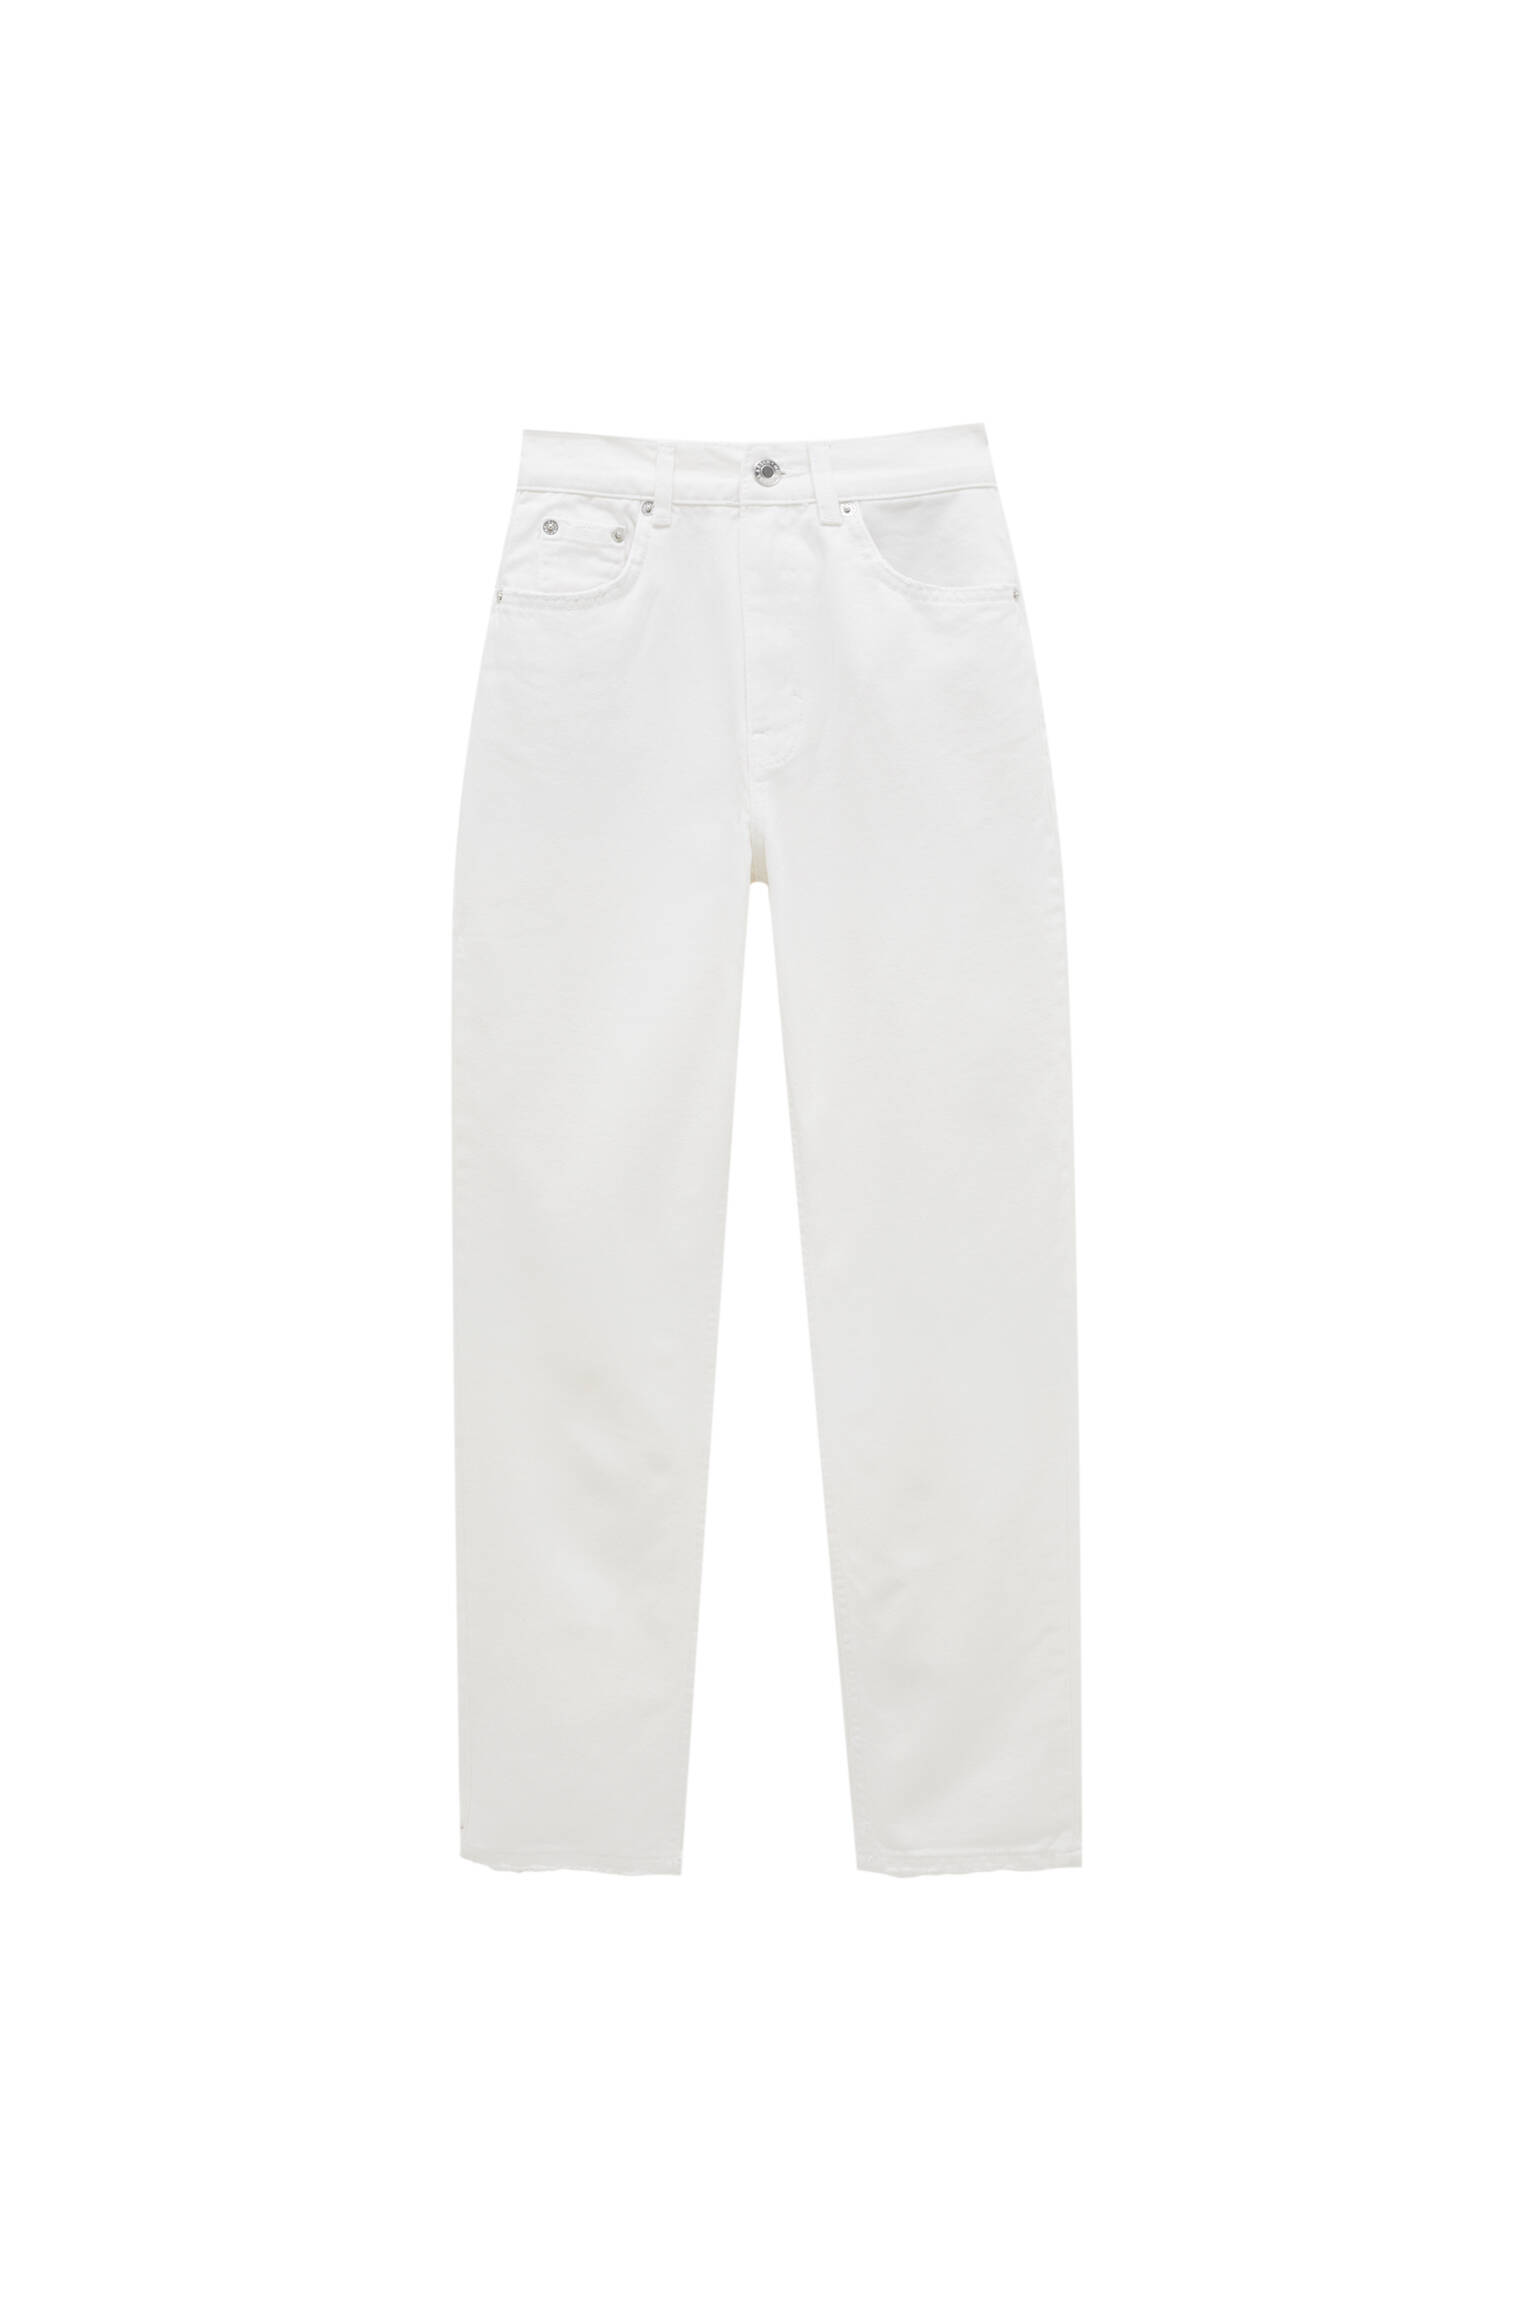 Базовые джинсы mom fit - органический хлопок (не менее 50%) БЕЛЫЙ Pull & Bear